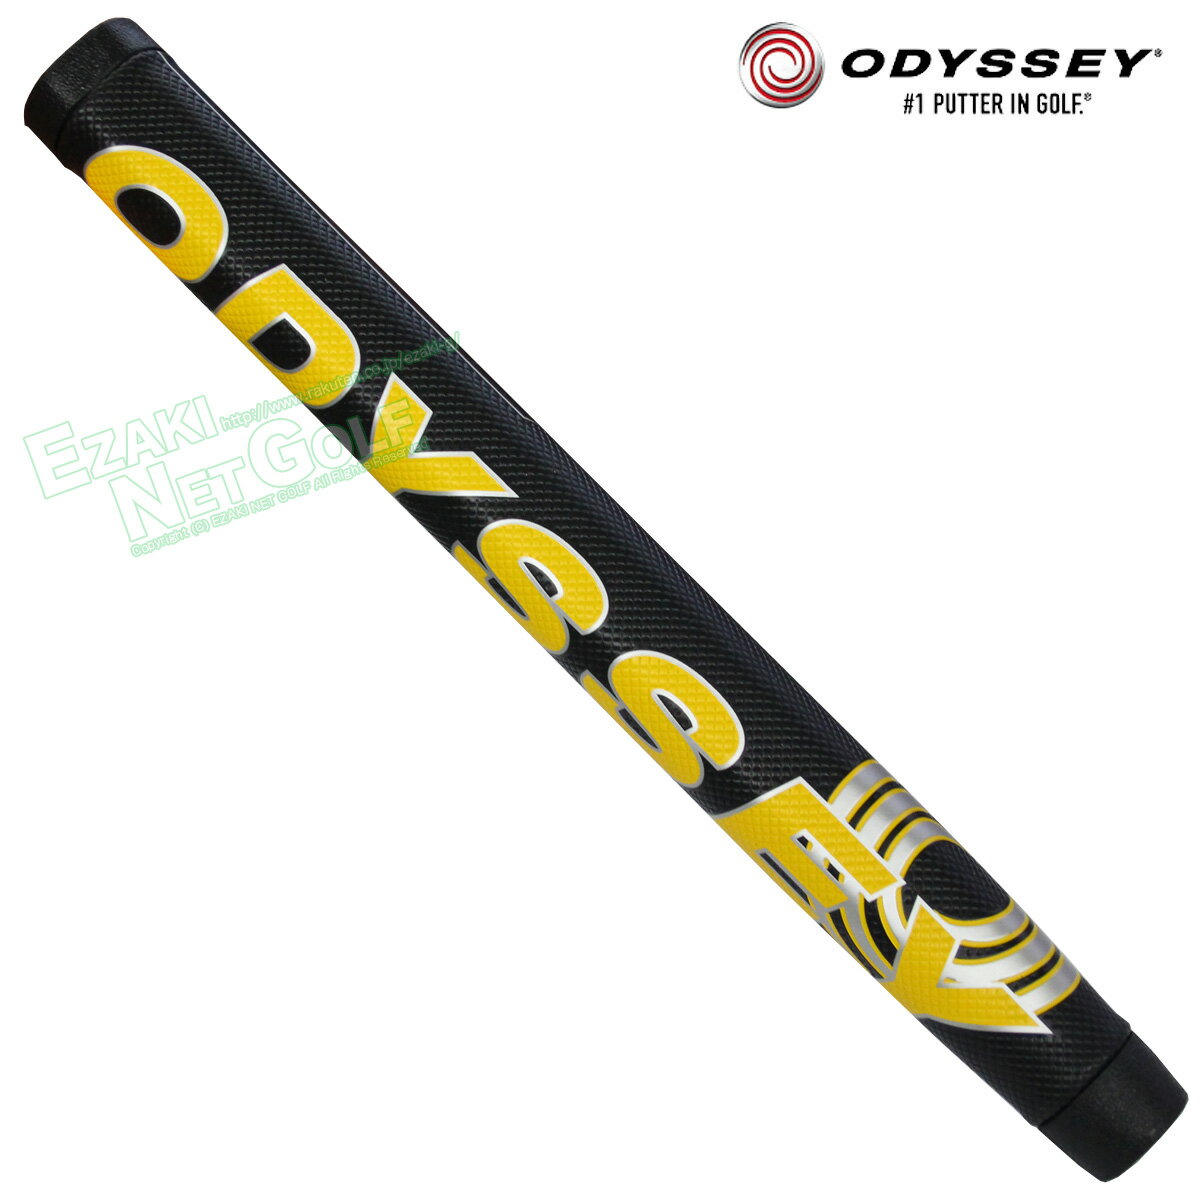 ODYSSEY オデッセイ 日本正規品 Putter Grip STROKE LAB OVERSIZE ストロークラボオーバーサイズ パター用ゴルフグリップ 「 OD PT STROKE LAB 19 OVERSIZE (5718032) 」 